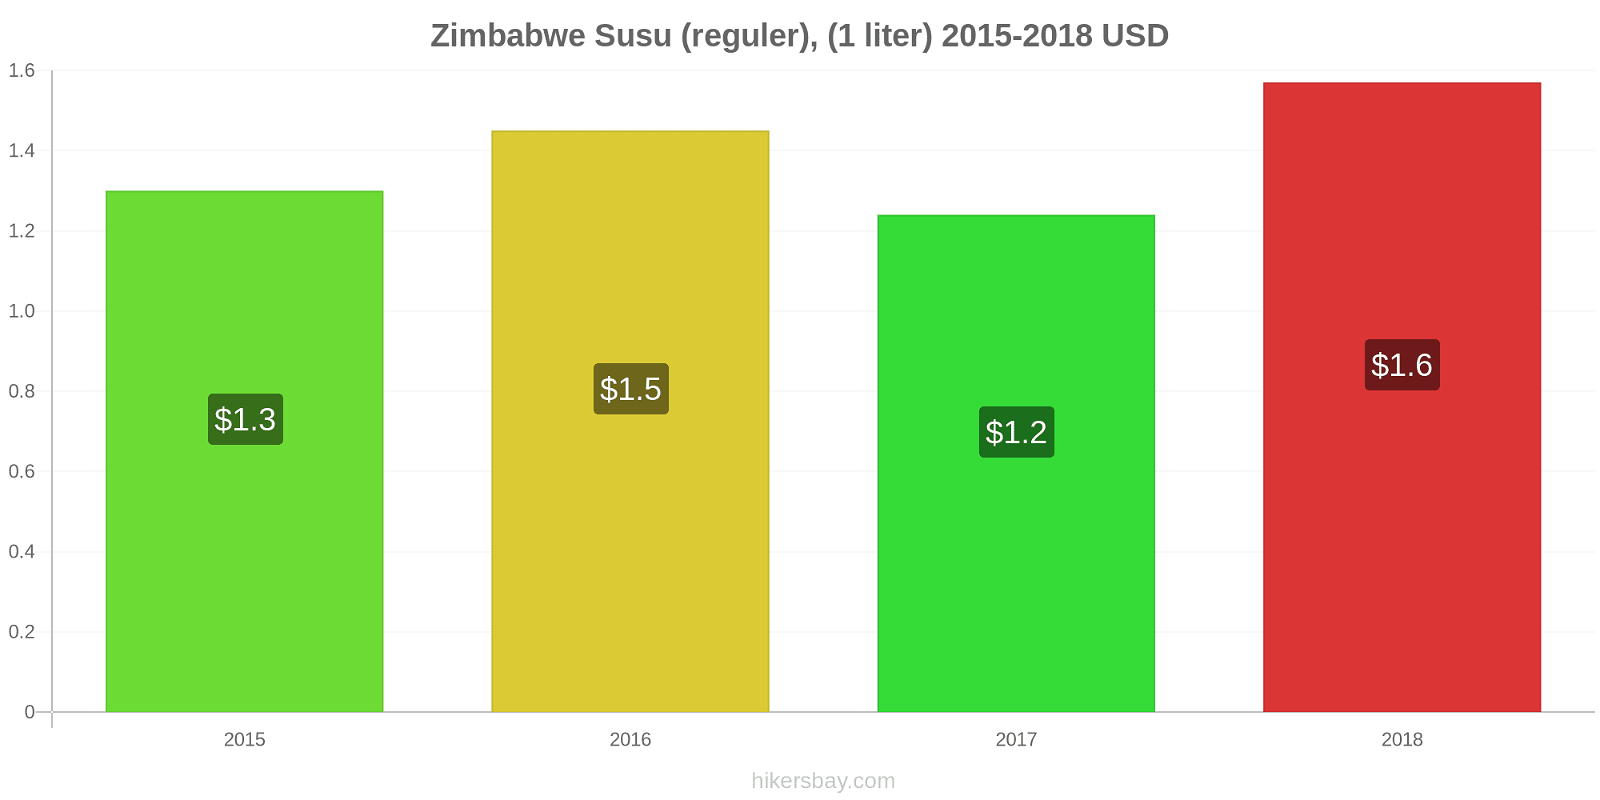 Zimbabwe perubahan harga Susu (reguler), (1 liter) hikersbay.com